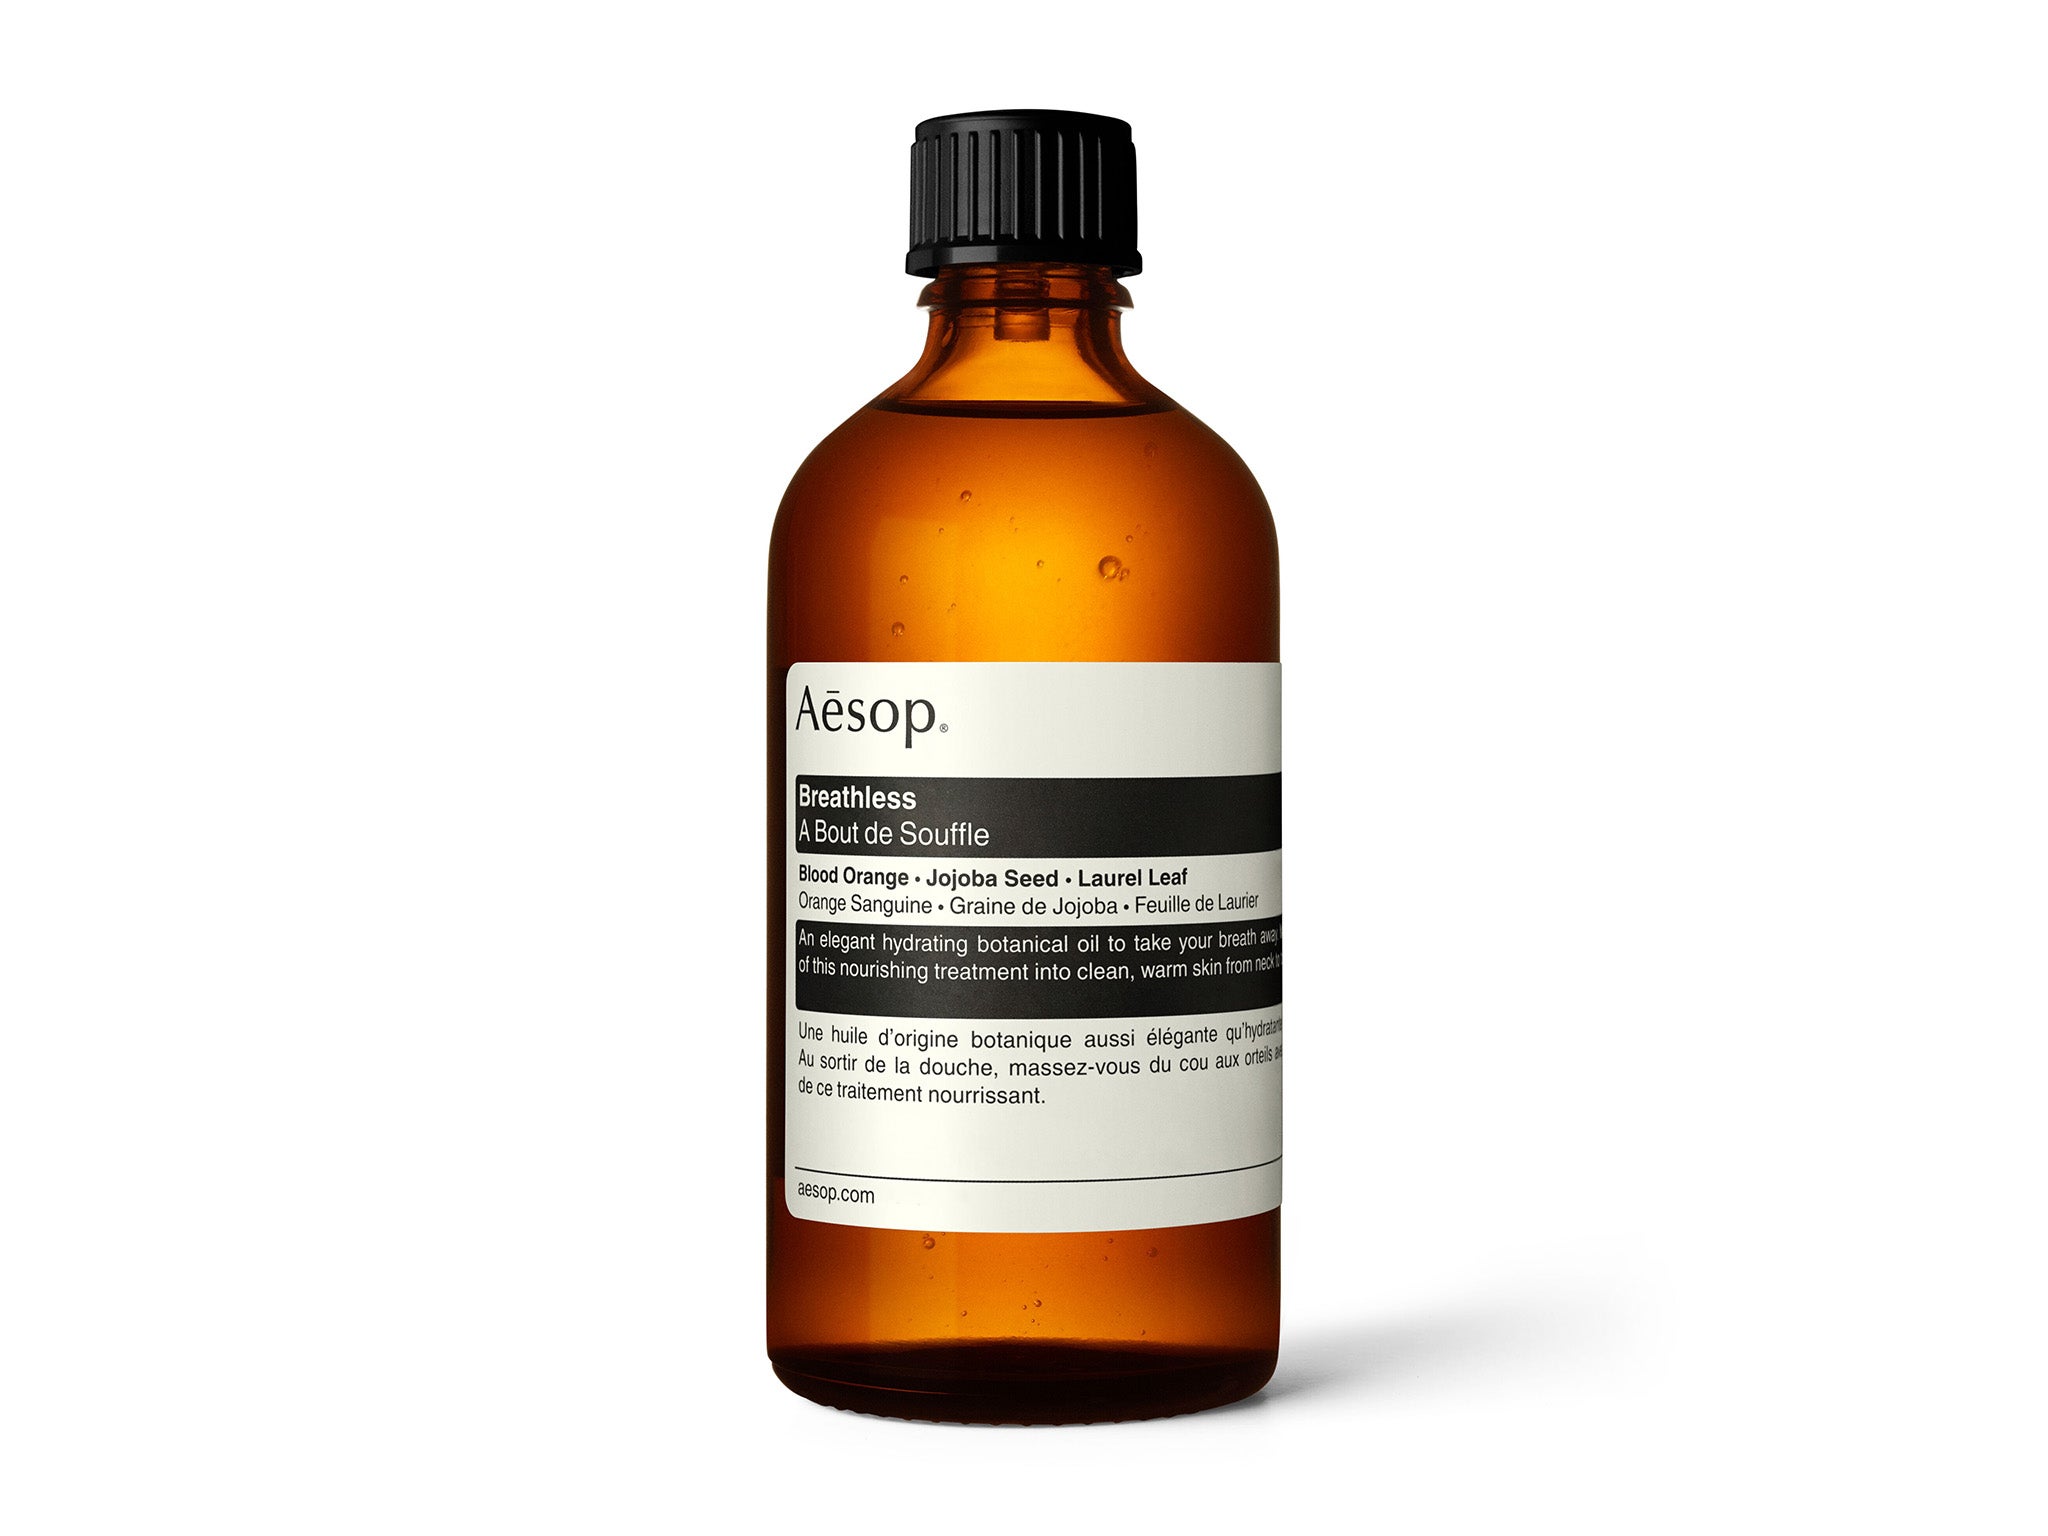 Aesop breathless body oil